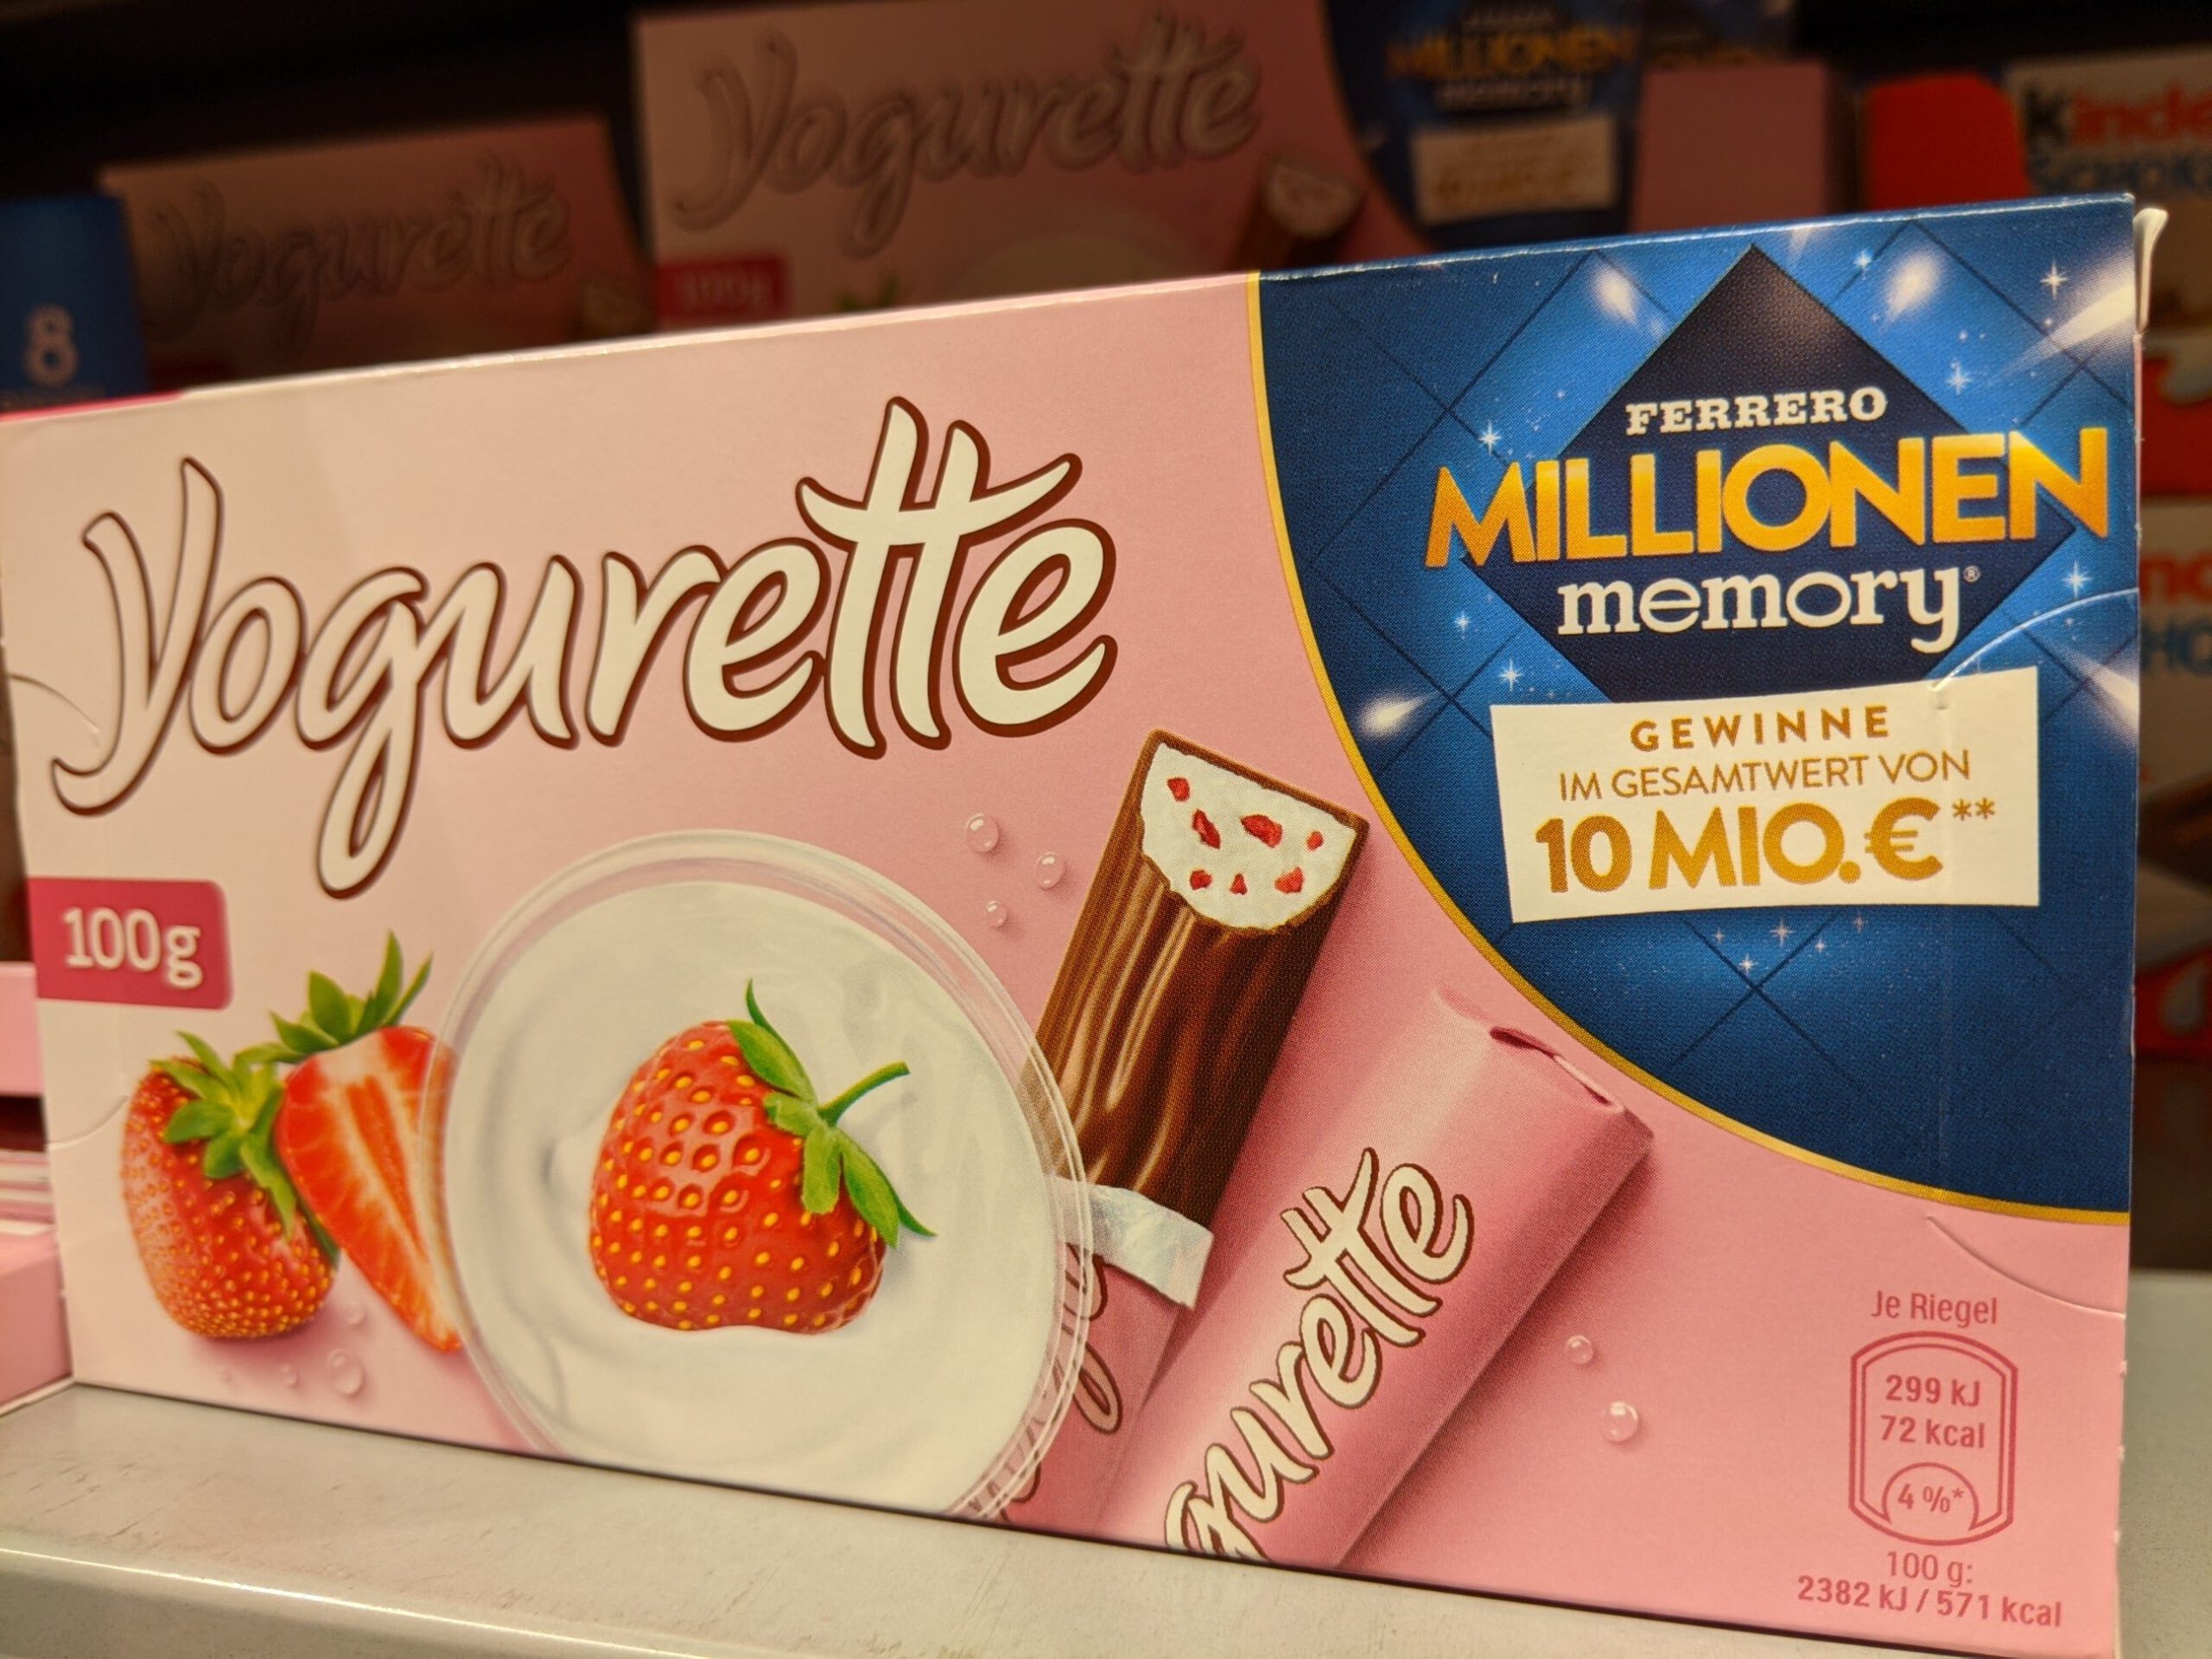 Yogurette Ferrero Millionen Memory 2020: Einkaufsgutscheine für Edeka, Marktkauf gewinnen